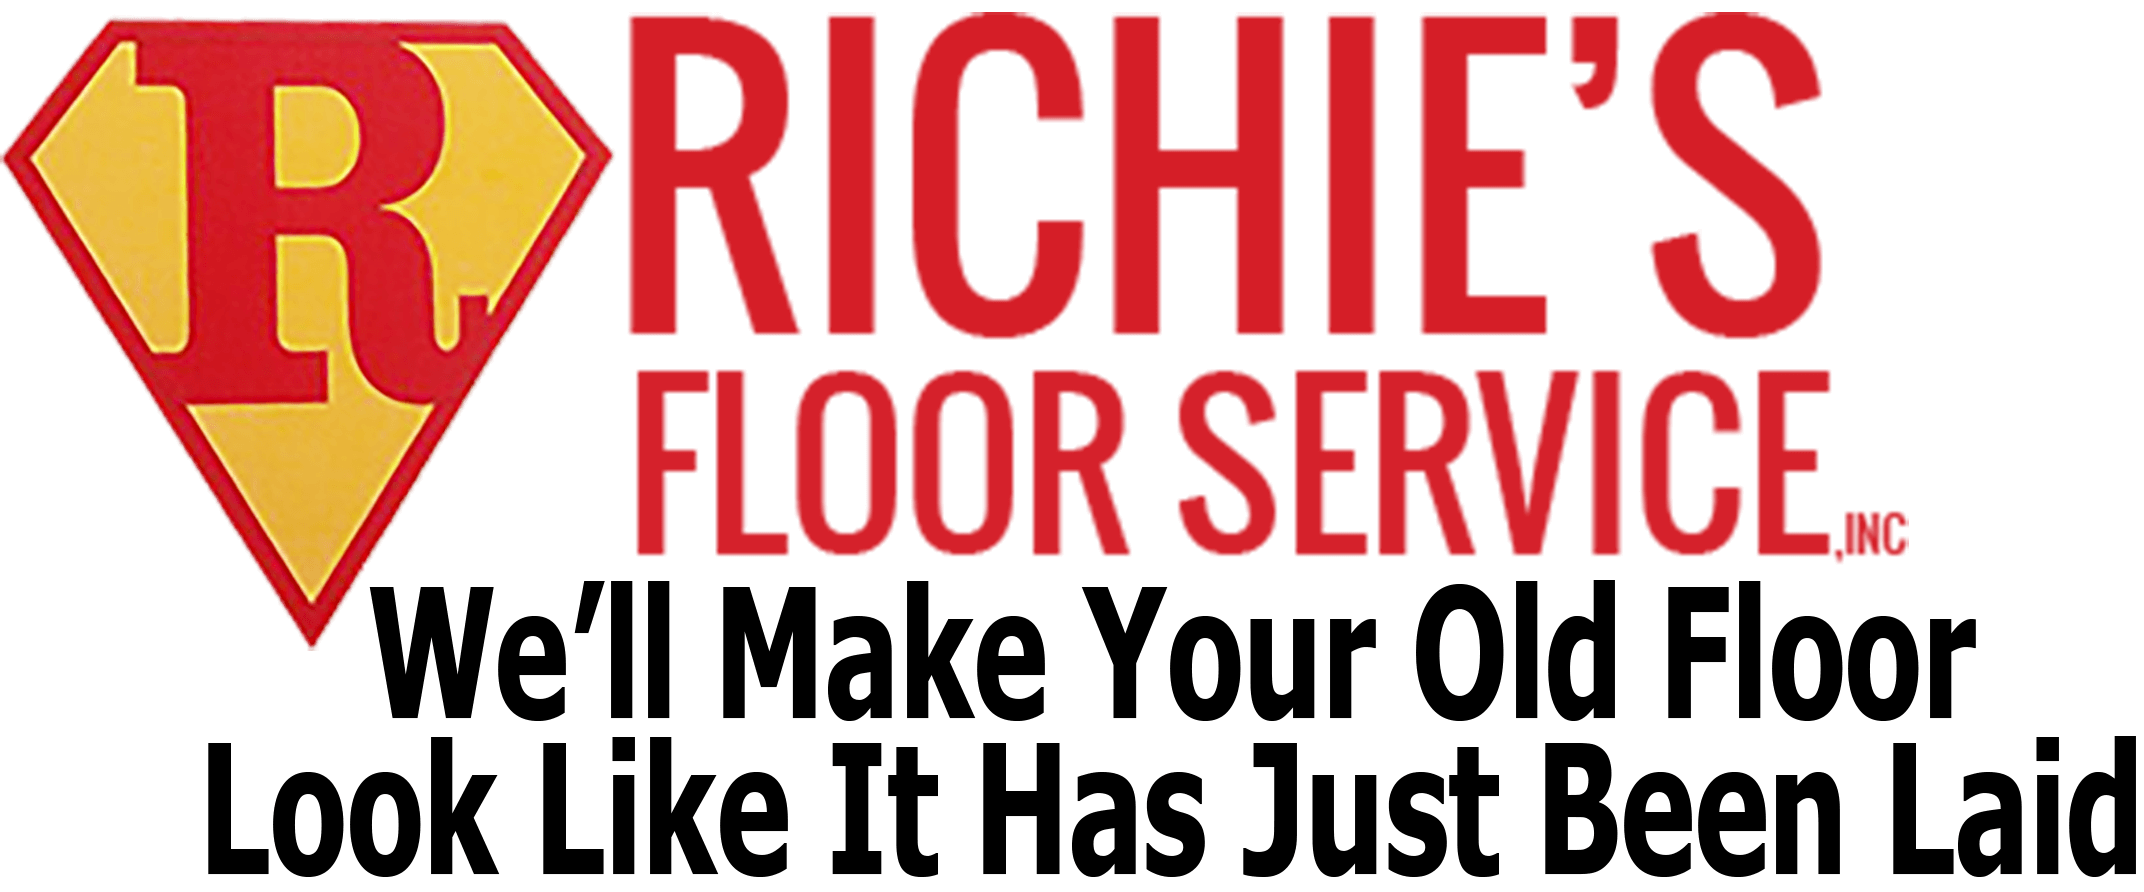 floor service